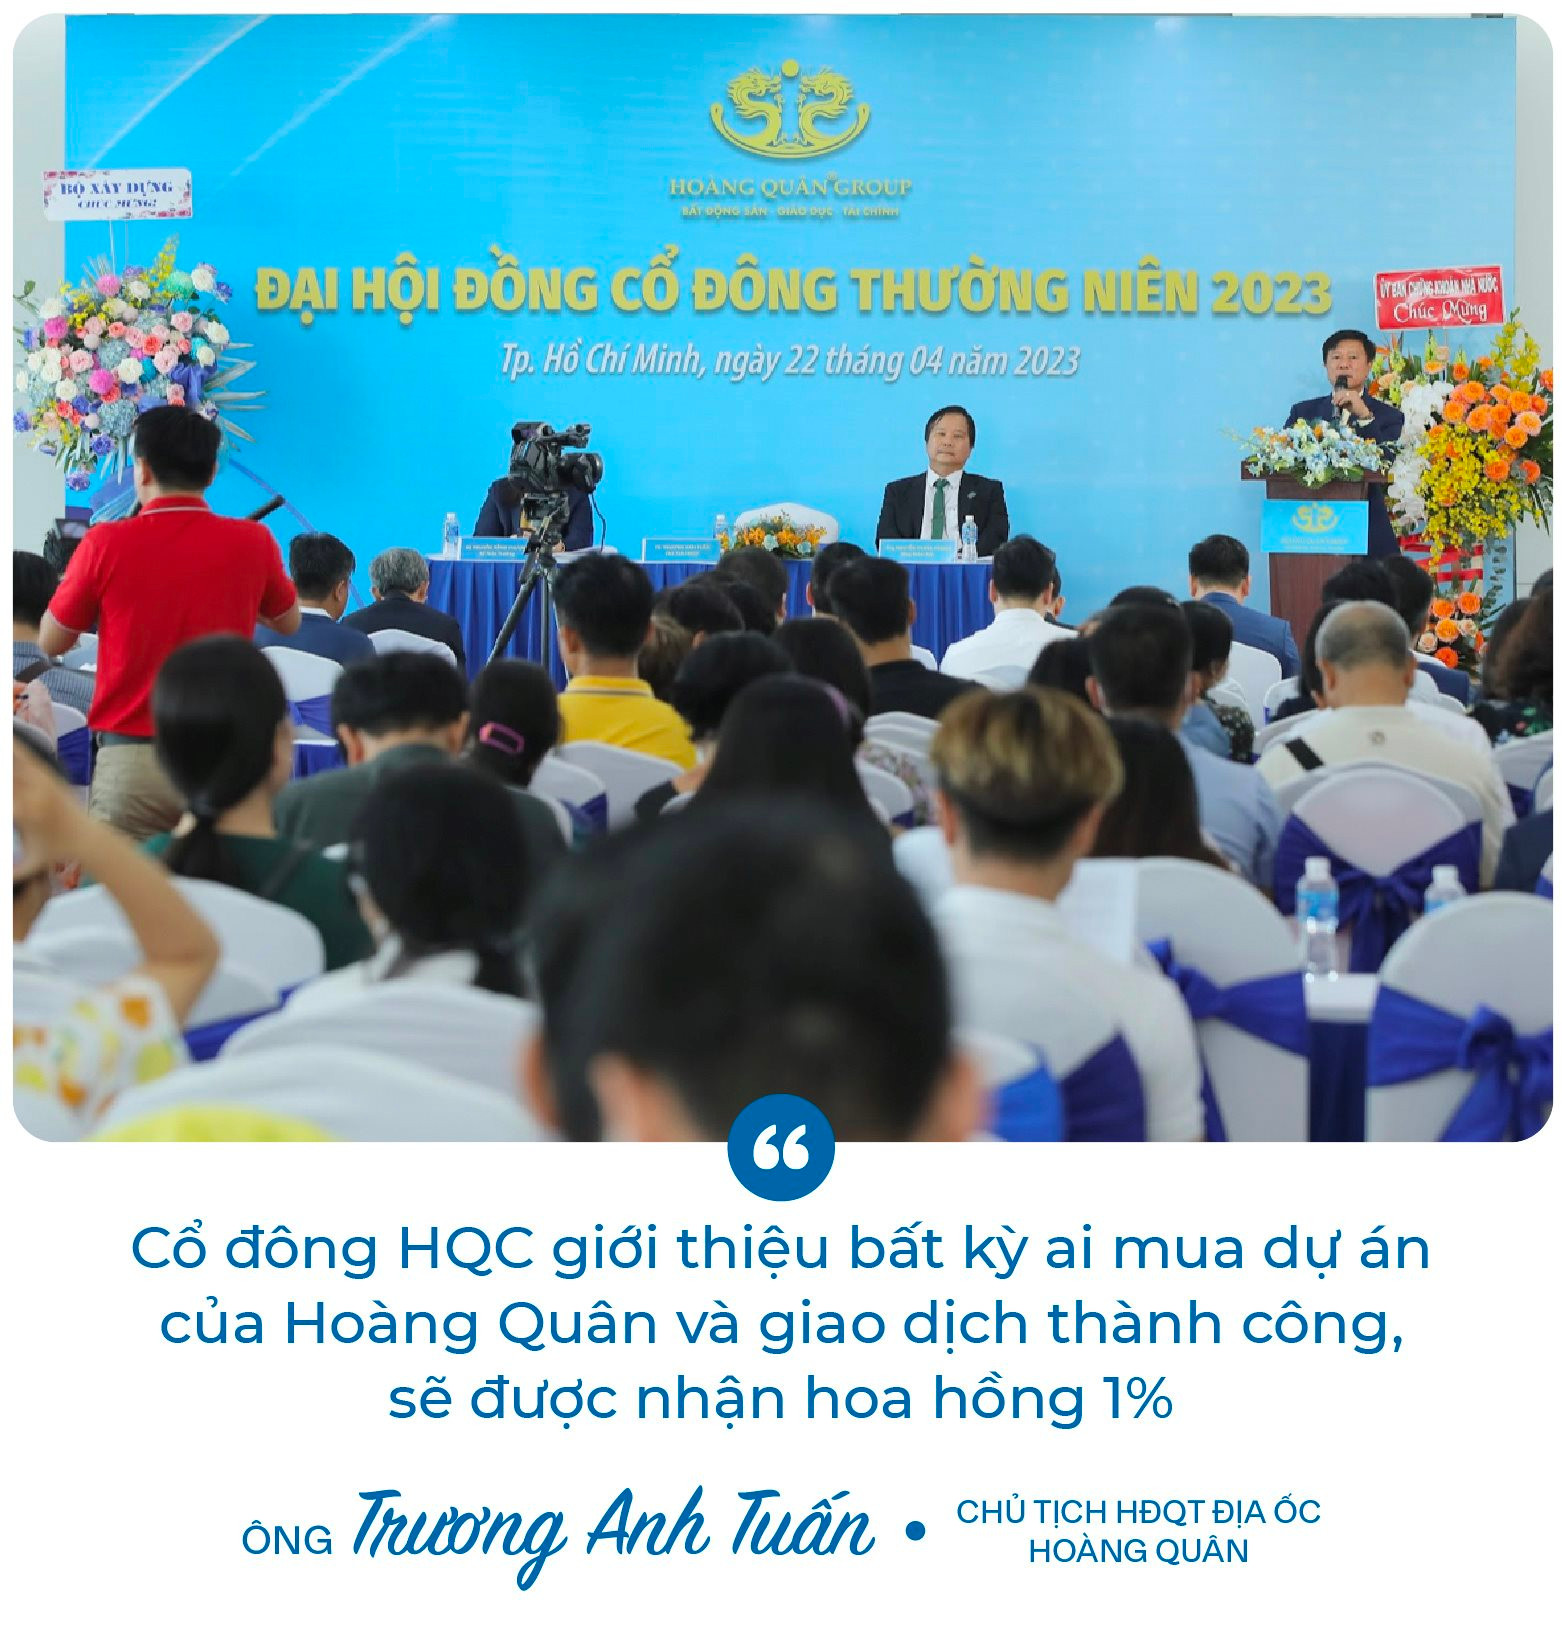 Chủ tịch Trương Anh Tuấn: ﻿“8 năm rồi Hoàng Quân (HQC) không đạt kế hoạch, và tôi cũng nói thật năm nay chưa chắc đạt” - Ảnh 5.